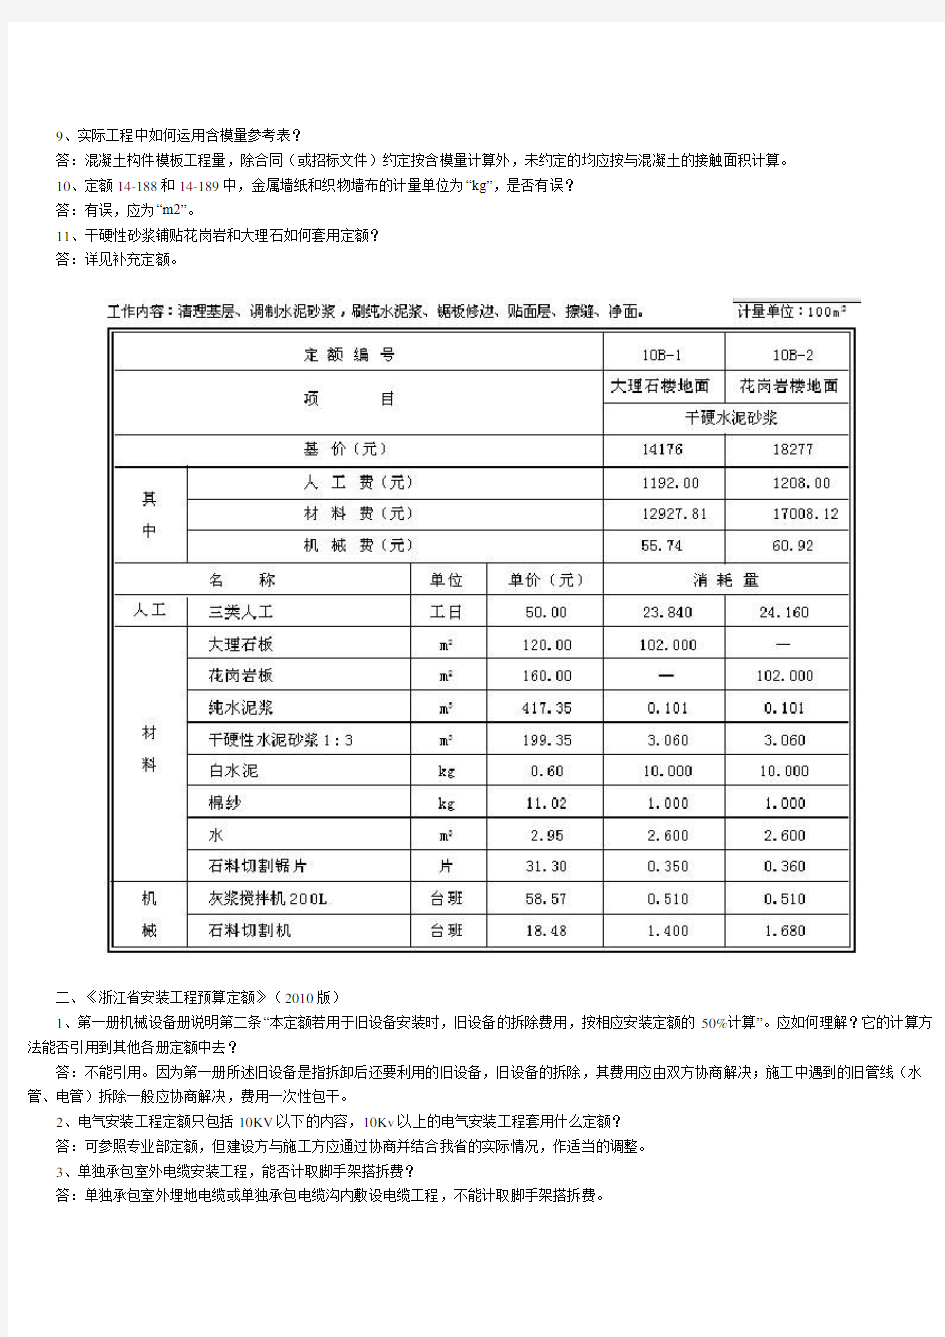 《浙江省建设工程2010版计价依据综合解释》(一)